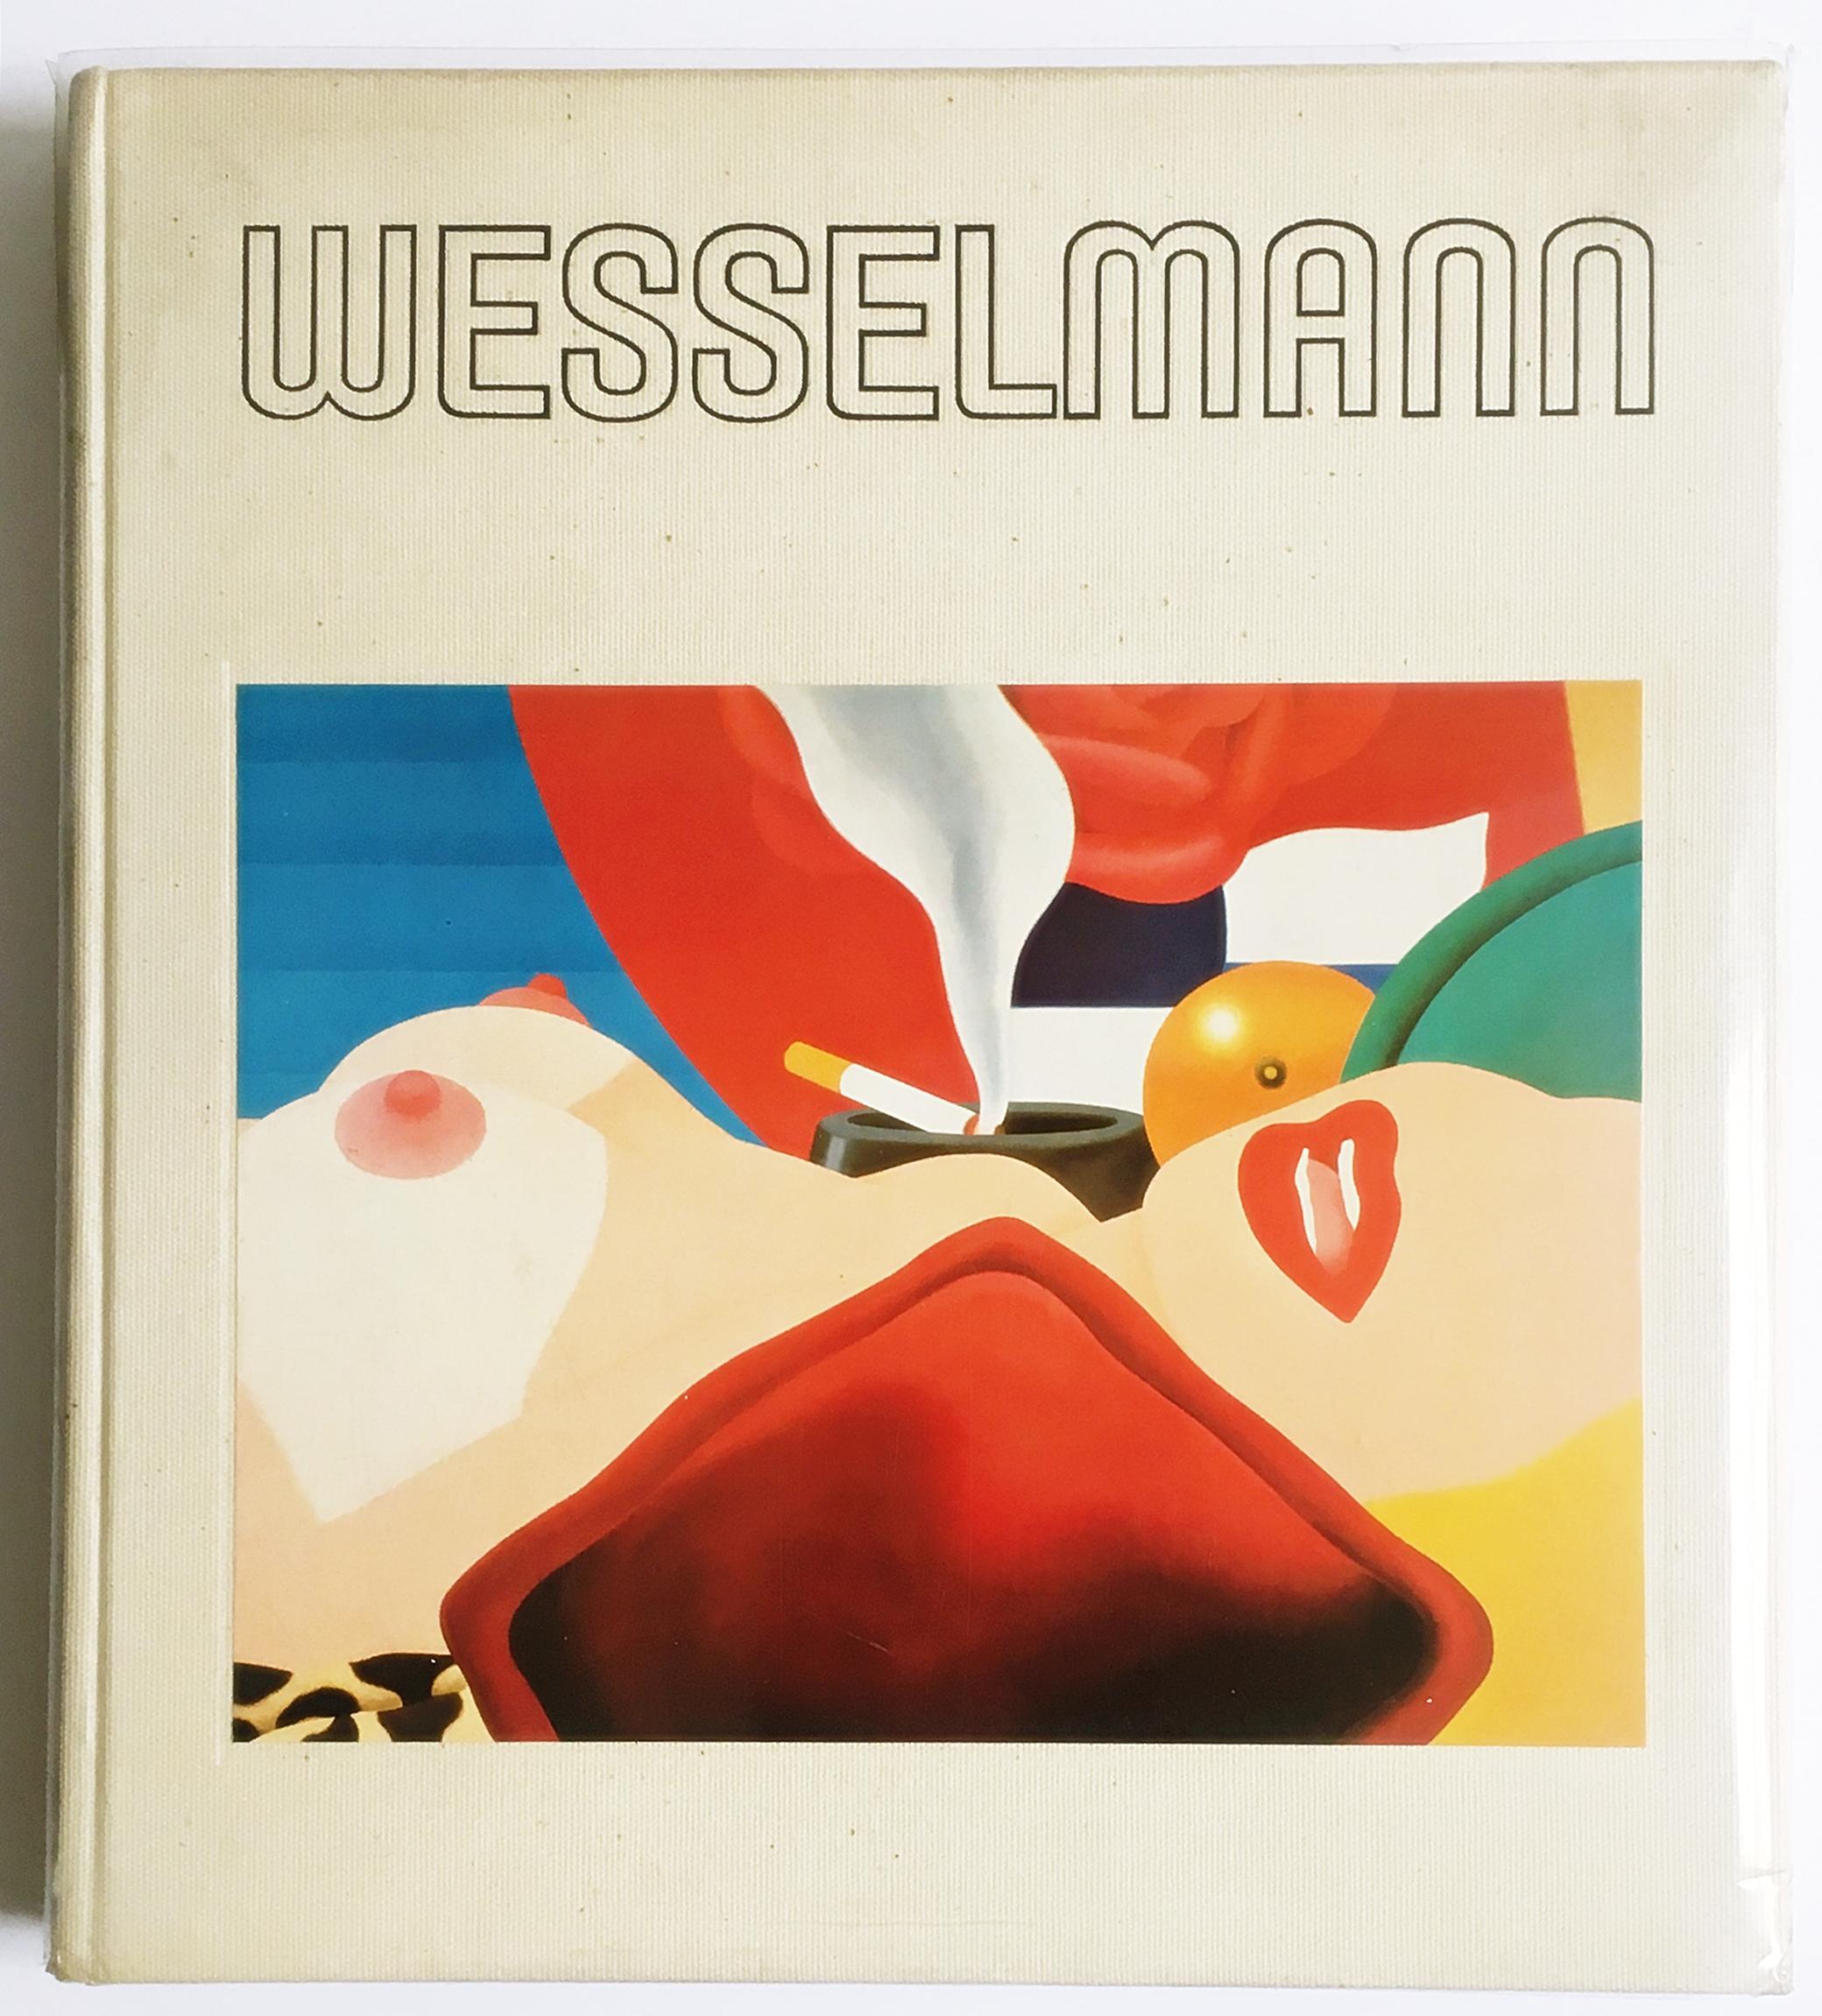 Tom Wesselmann
Tom Wesselmann (signé à la main et chaleureusement inscrit par Tom Wesselmann), 1980
Monographie reliée
Signé à la main, daté et chaleureusement inscrit par Tom Wesselmann.
13 1/2 × 12 × 1 1/2 in
Non encadré
Cette magnifique